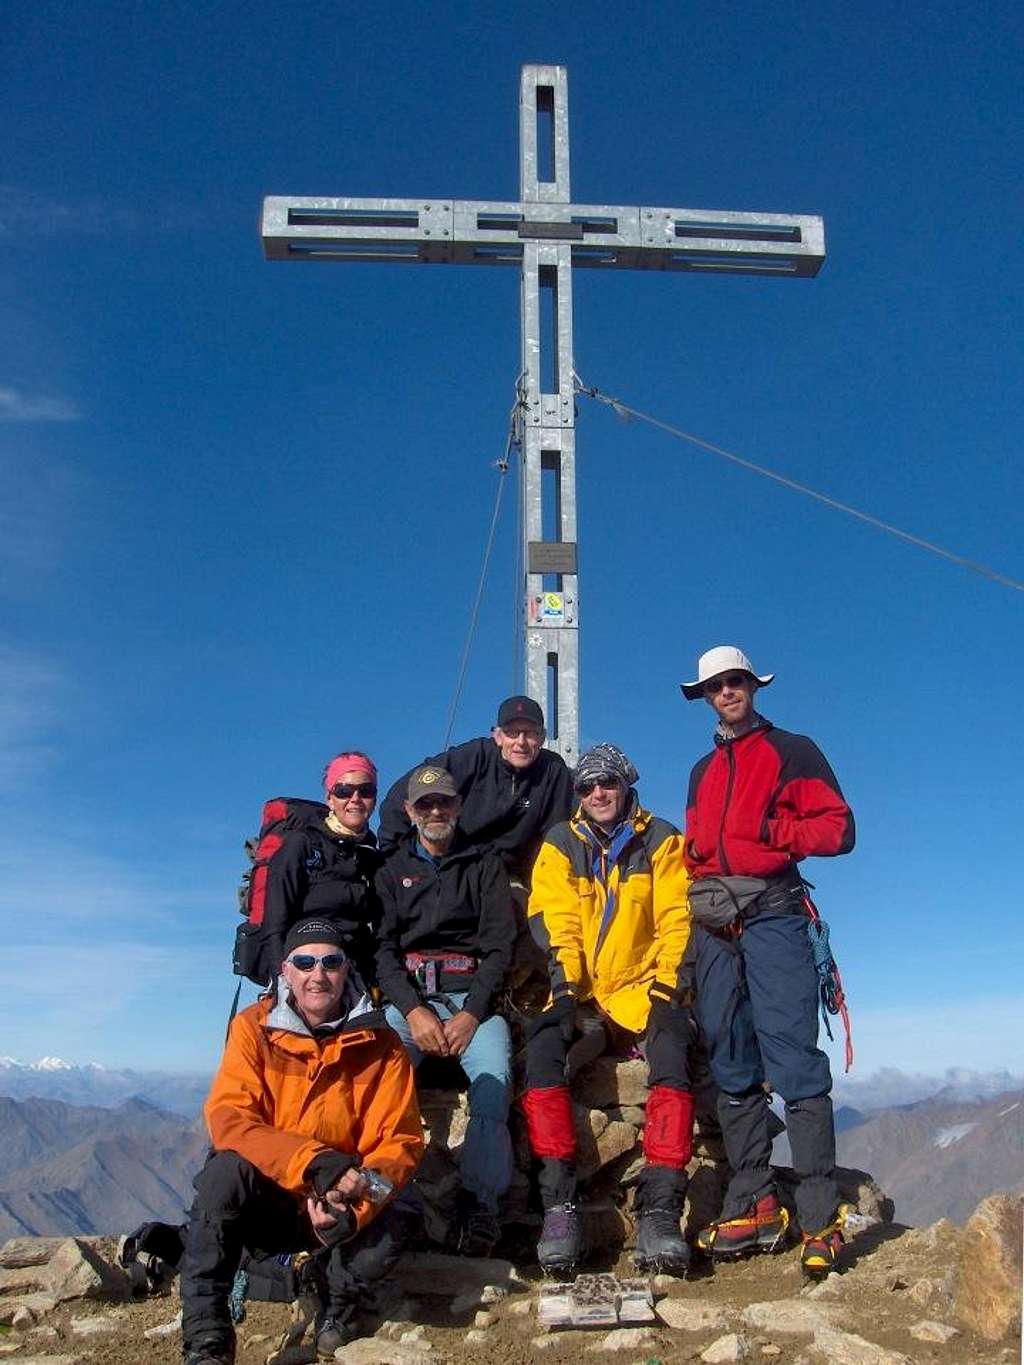 Similaun summit cross